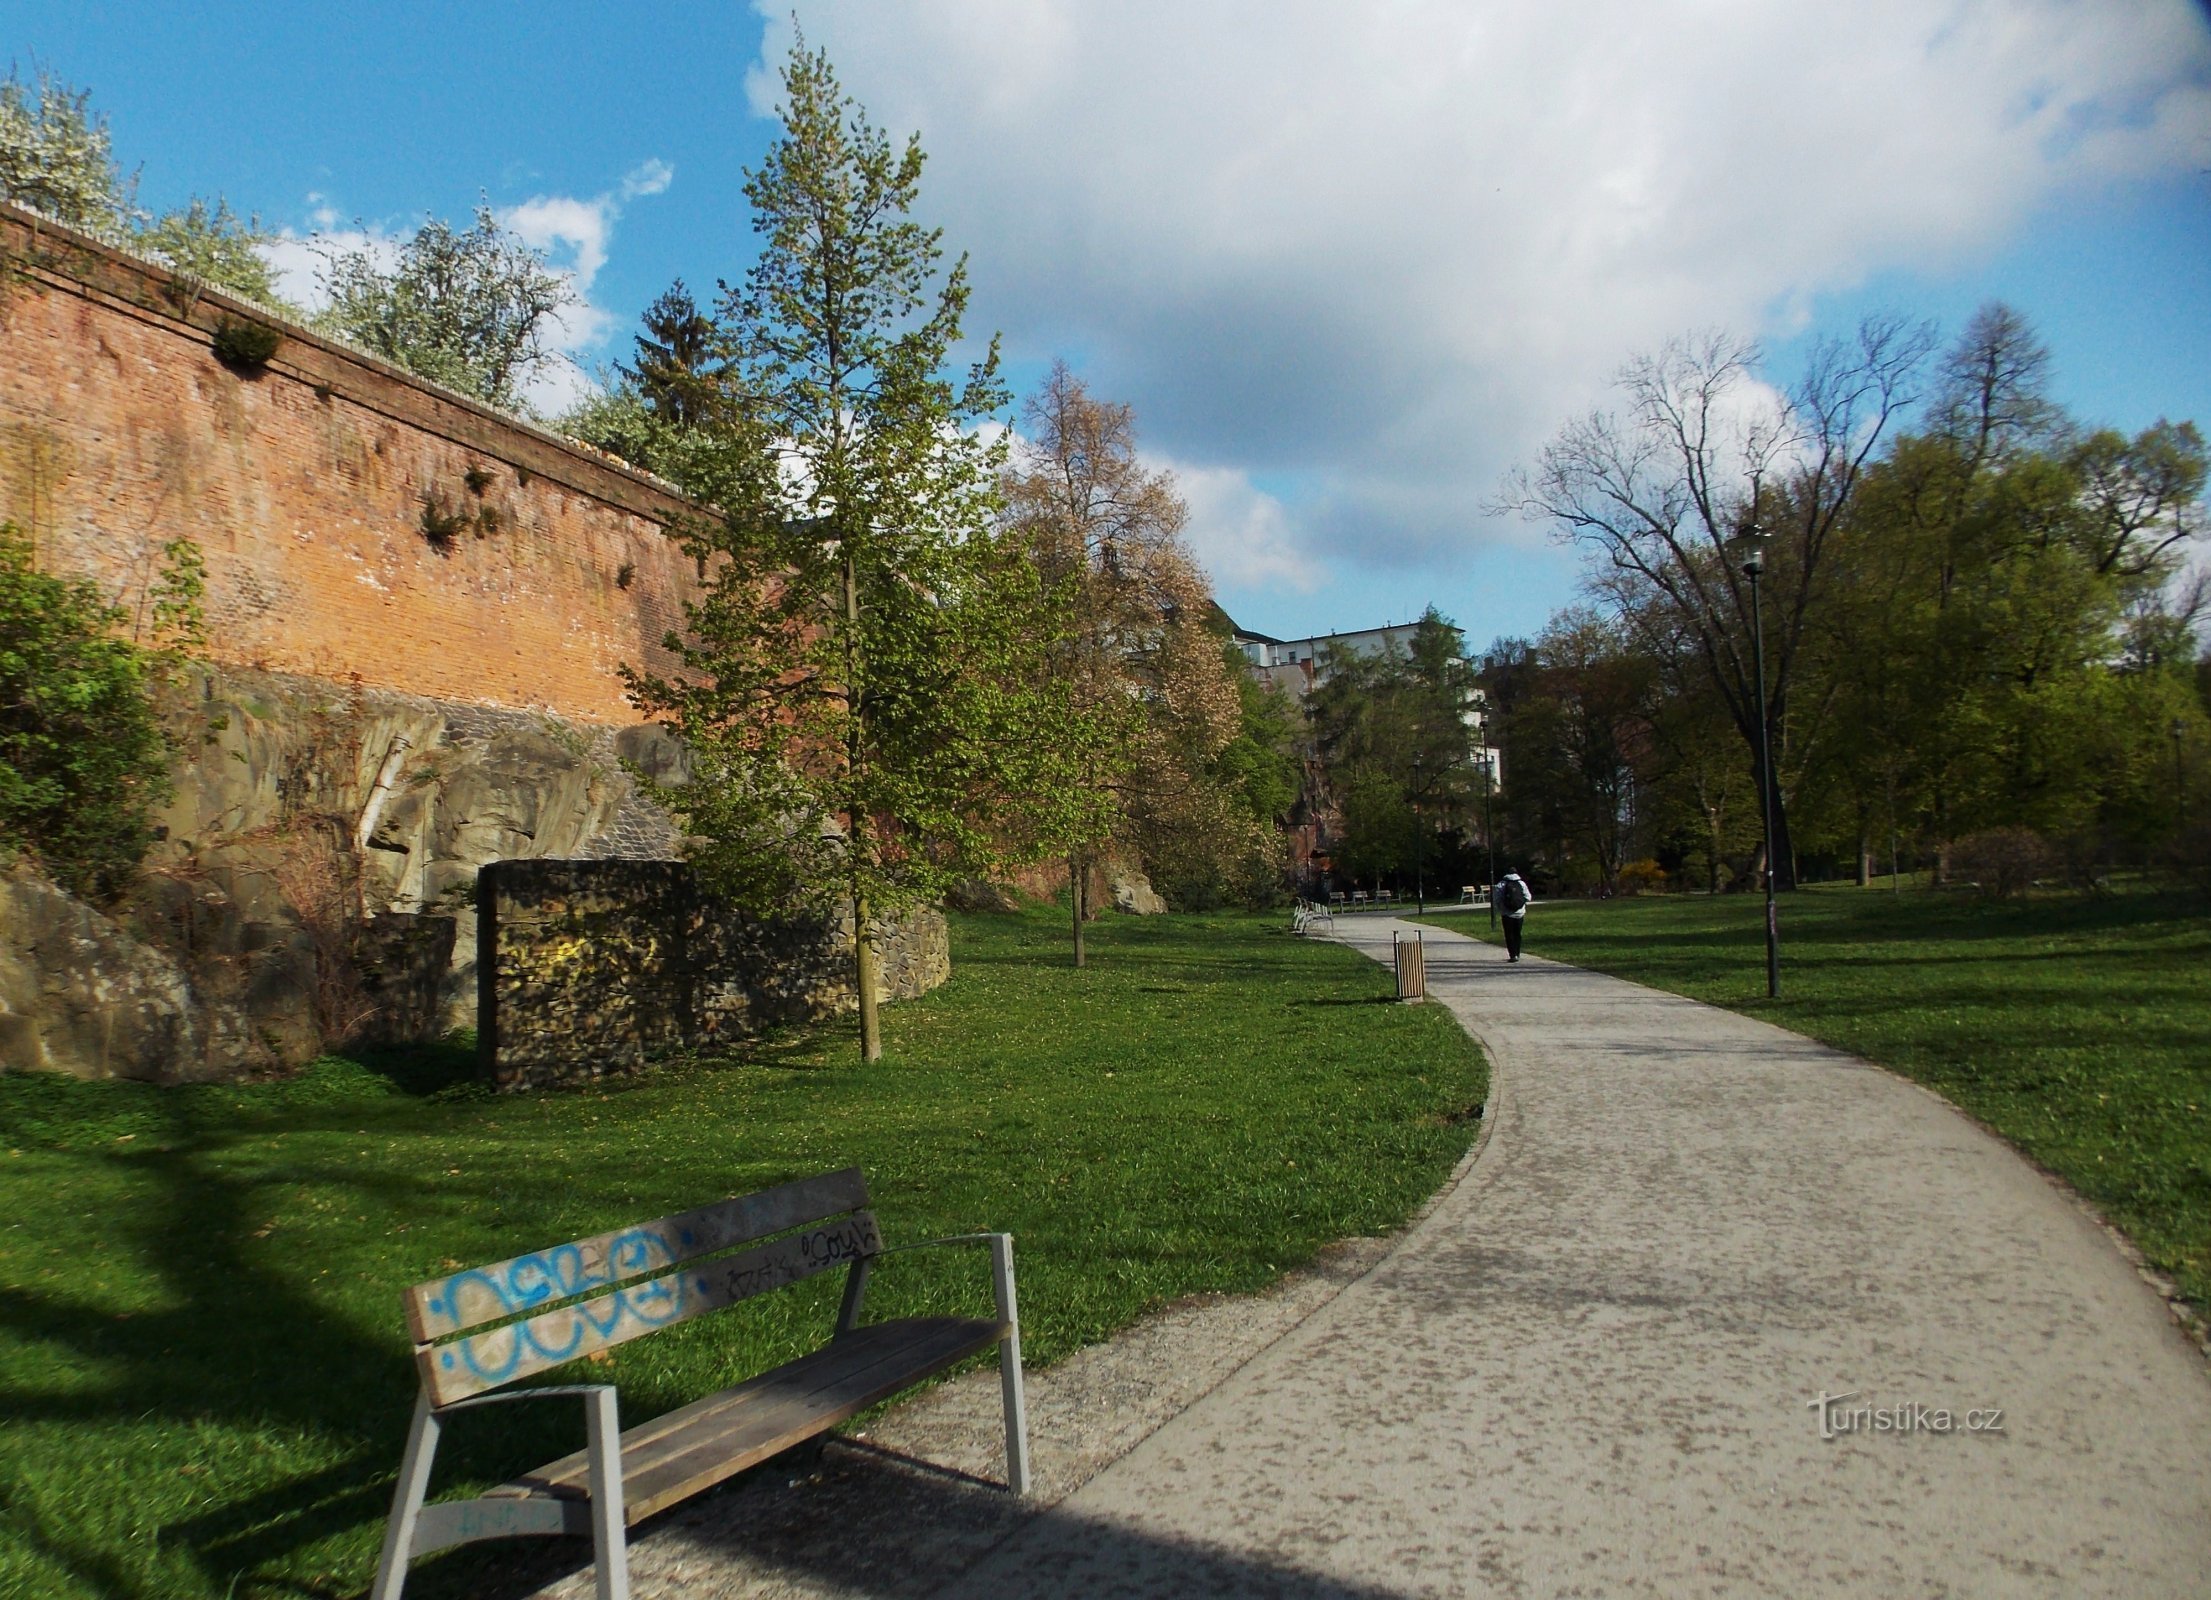 Olomouc, o plimbare prin parcul orașului - Bezručovy sady